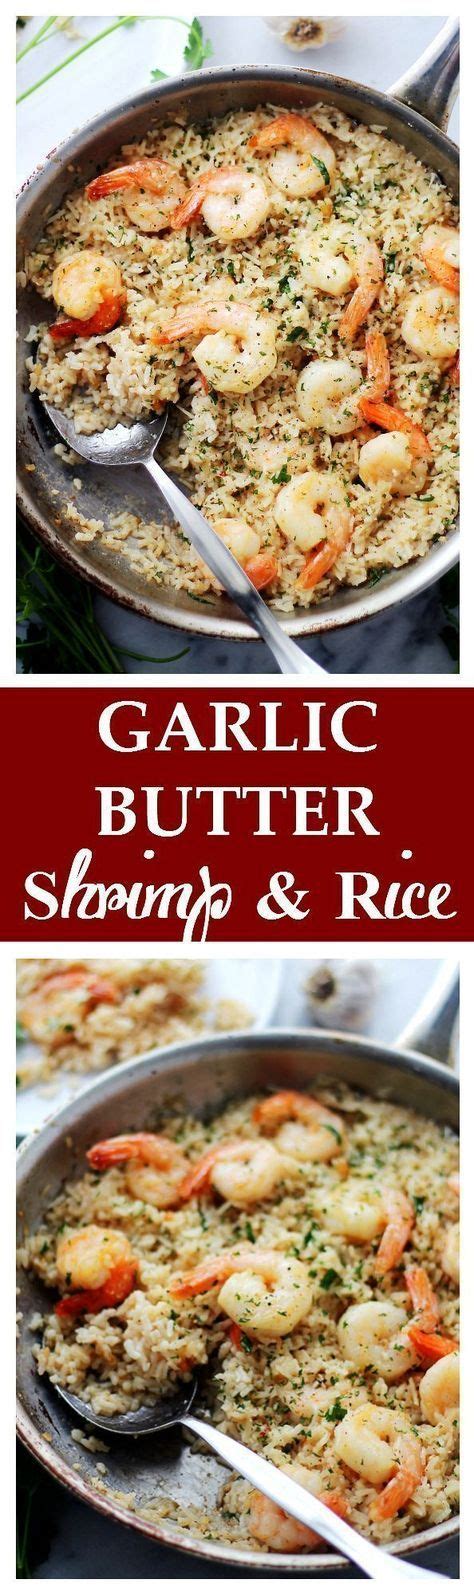 Garlic Butter Shrimp And Rice Garlic Butter Lends An Amazing Flavor